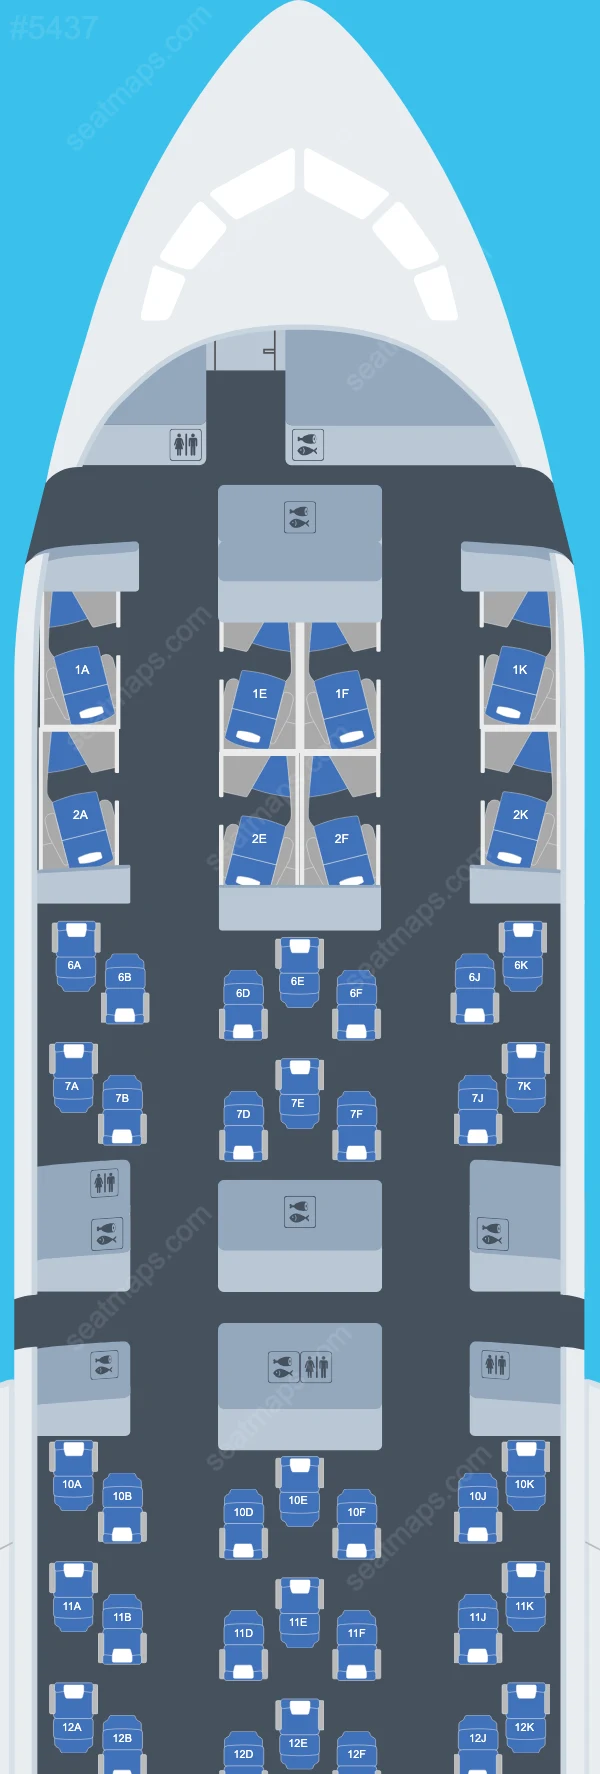 British Airways Boeing 787 Seat Maps 787-9